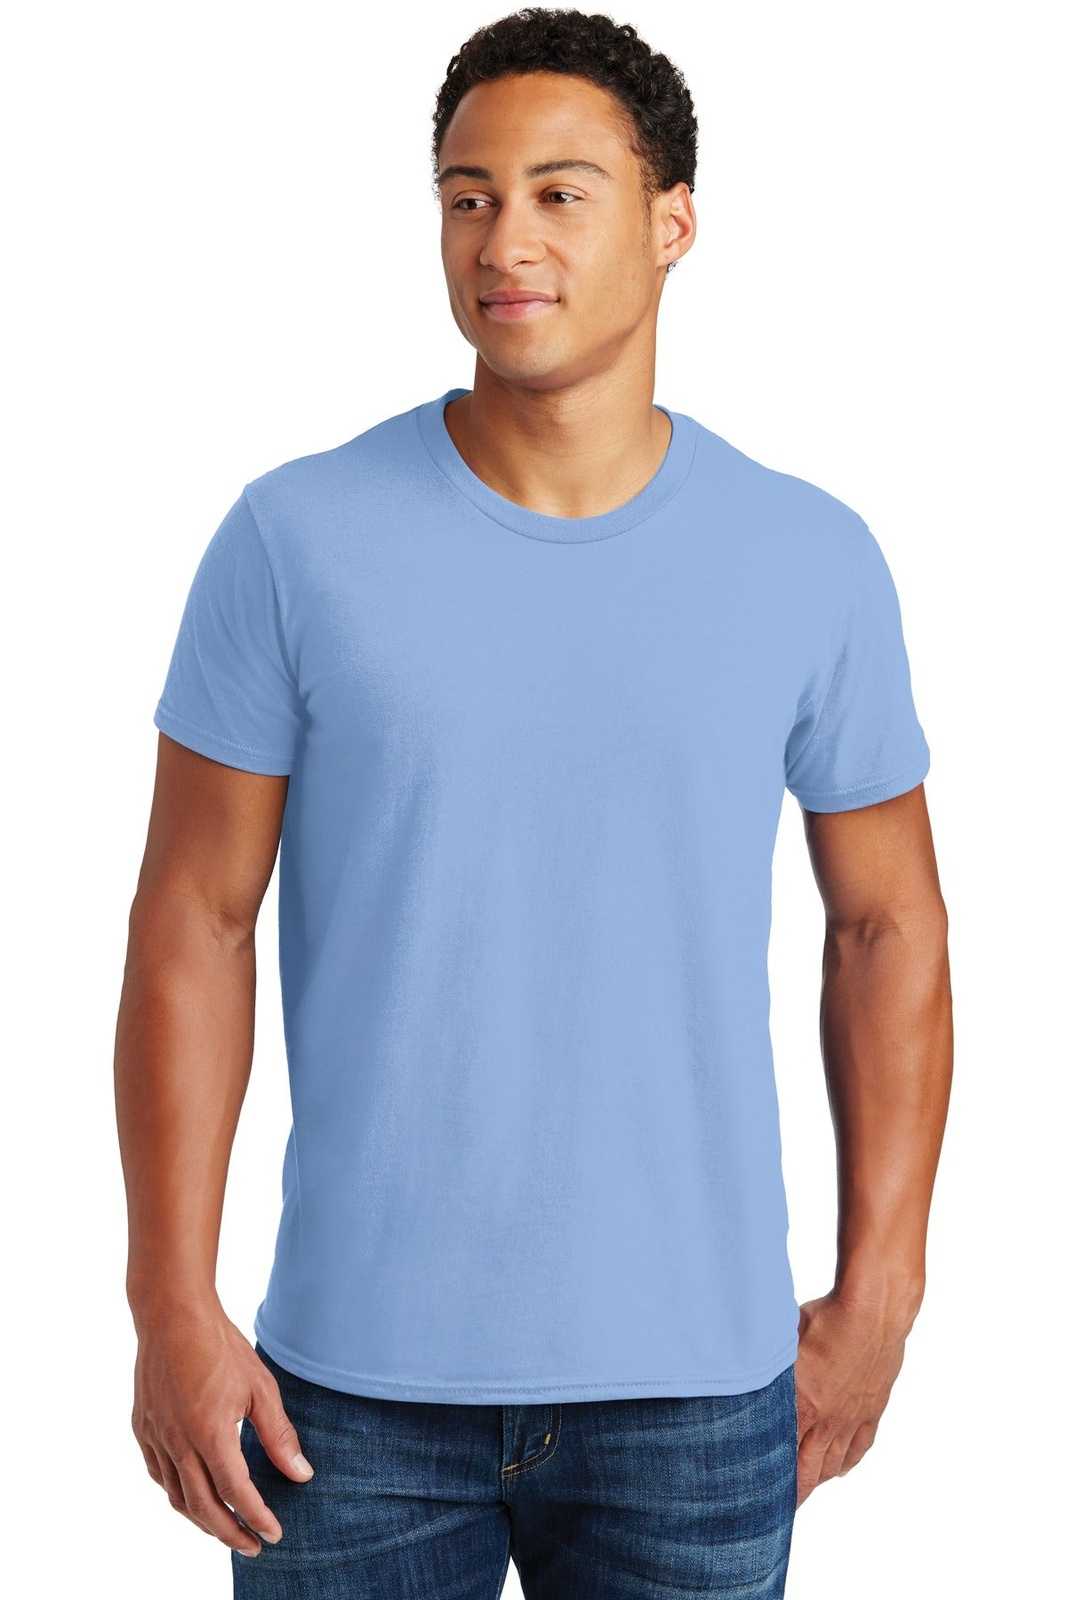 Hanes 4980 Nano-T Cotton T-Shirt - Light Blue - HIT a Double